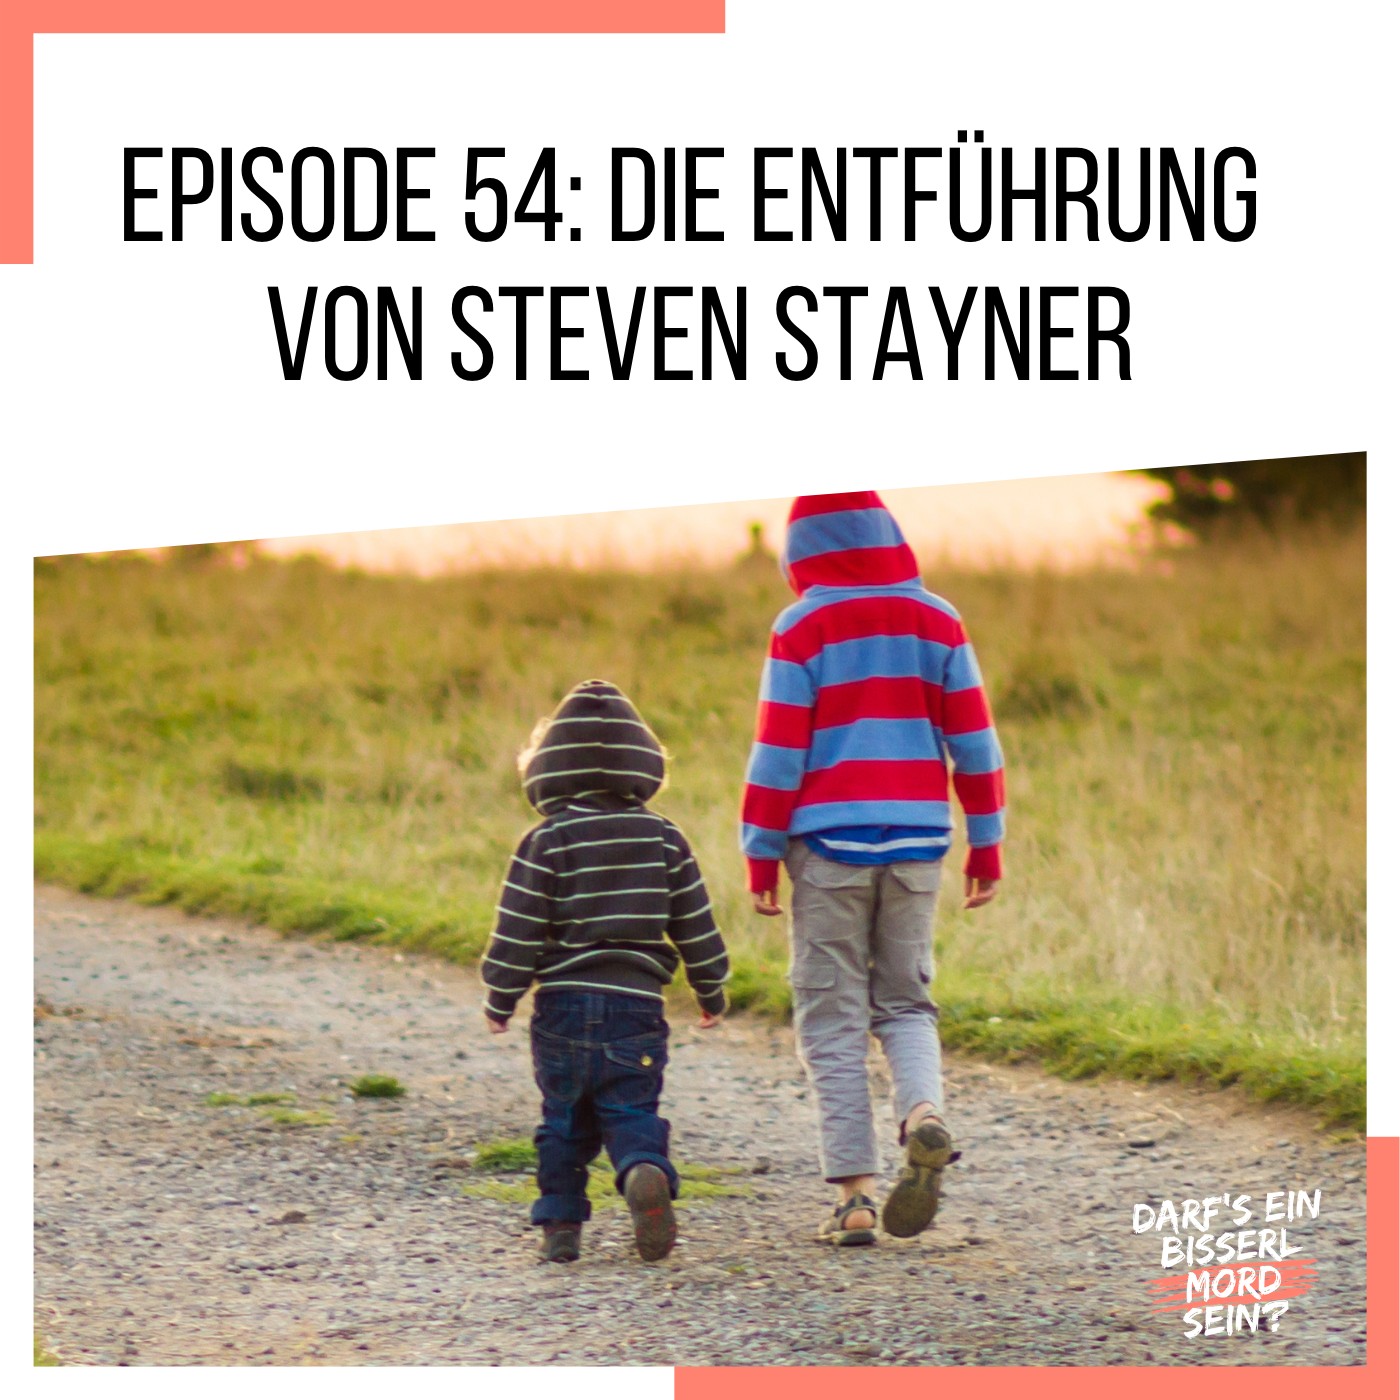 Episode 54: Die Entführung von Steven Stayner